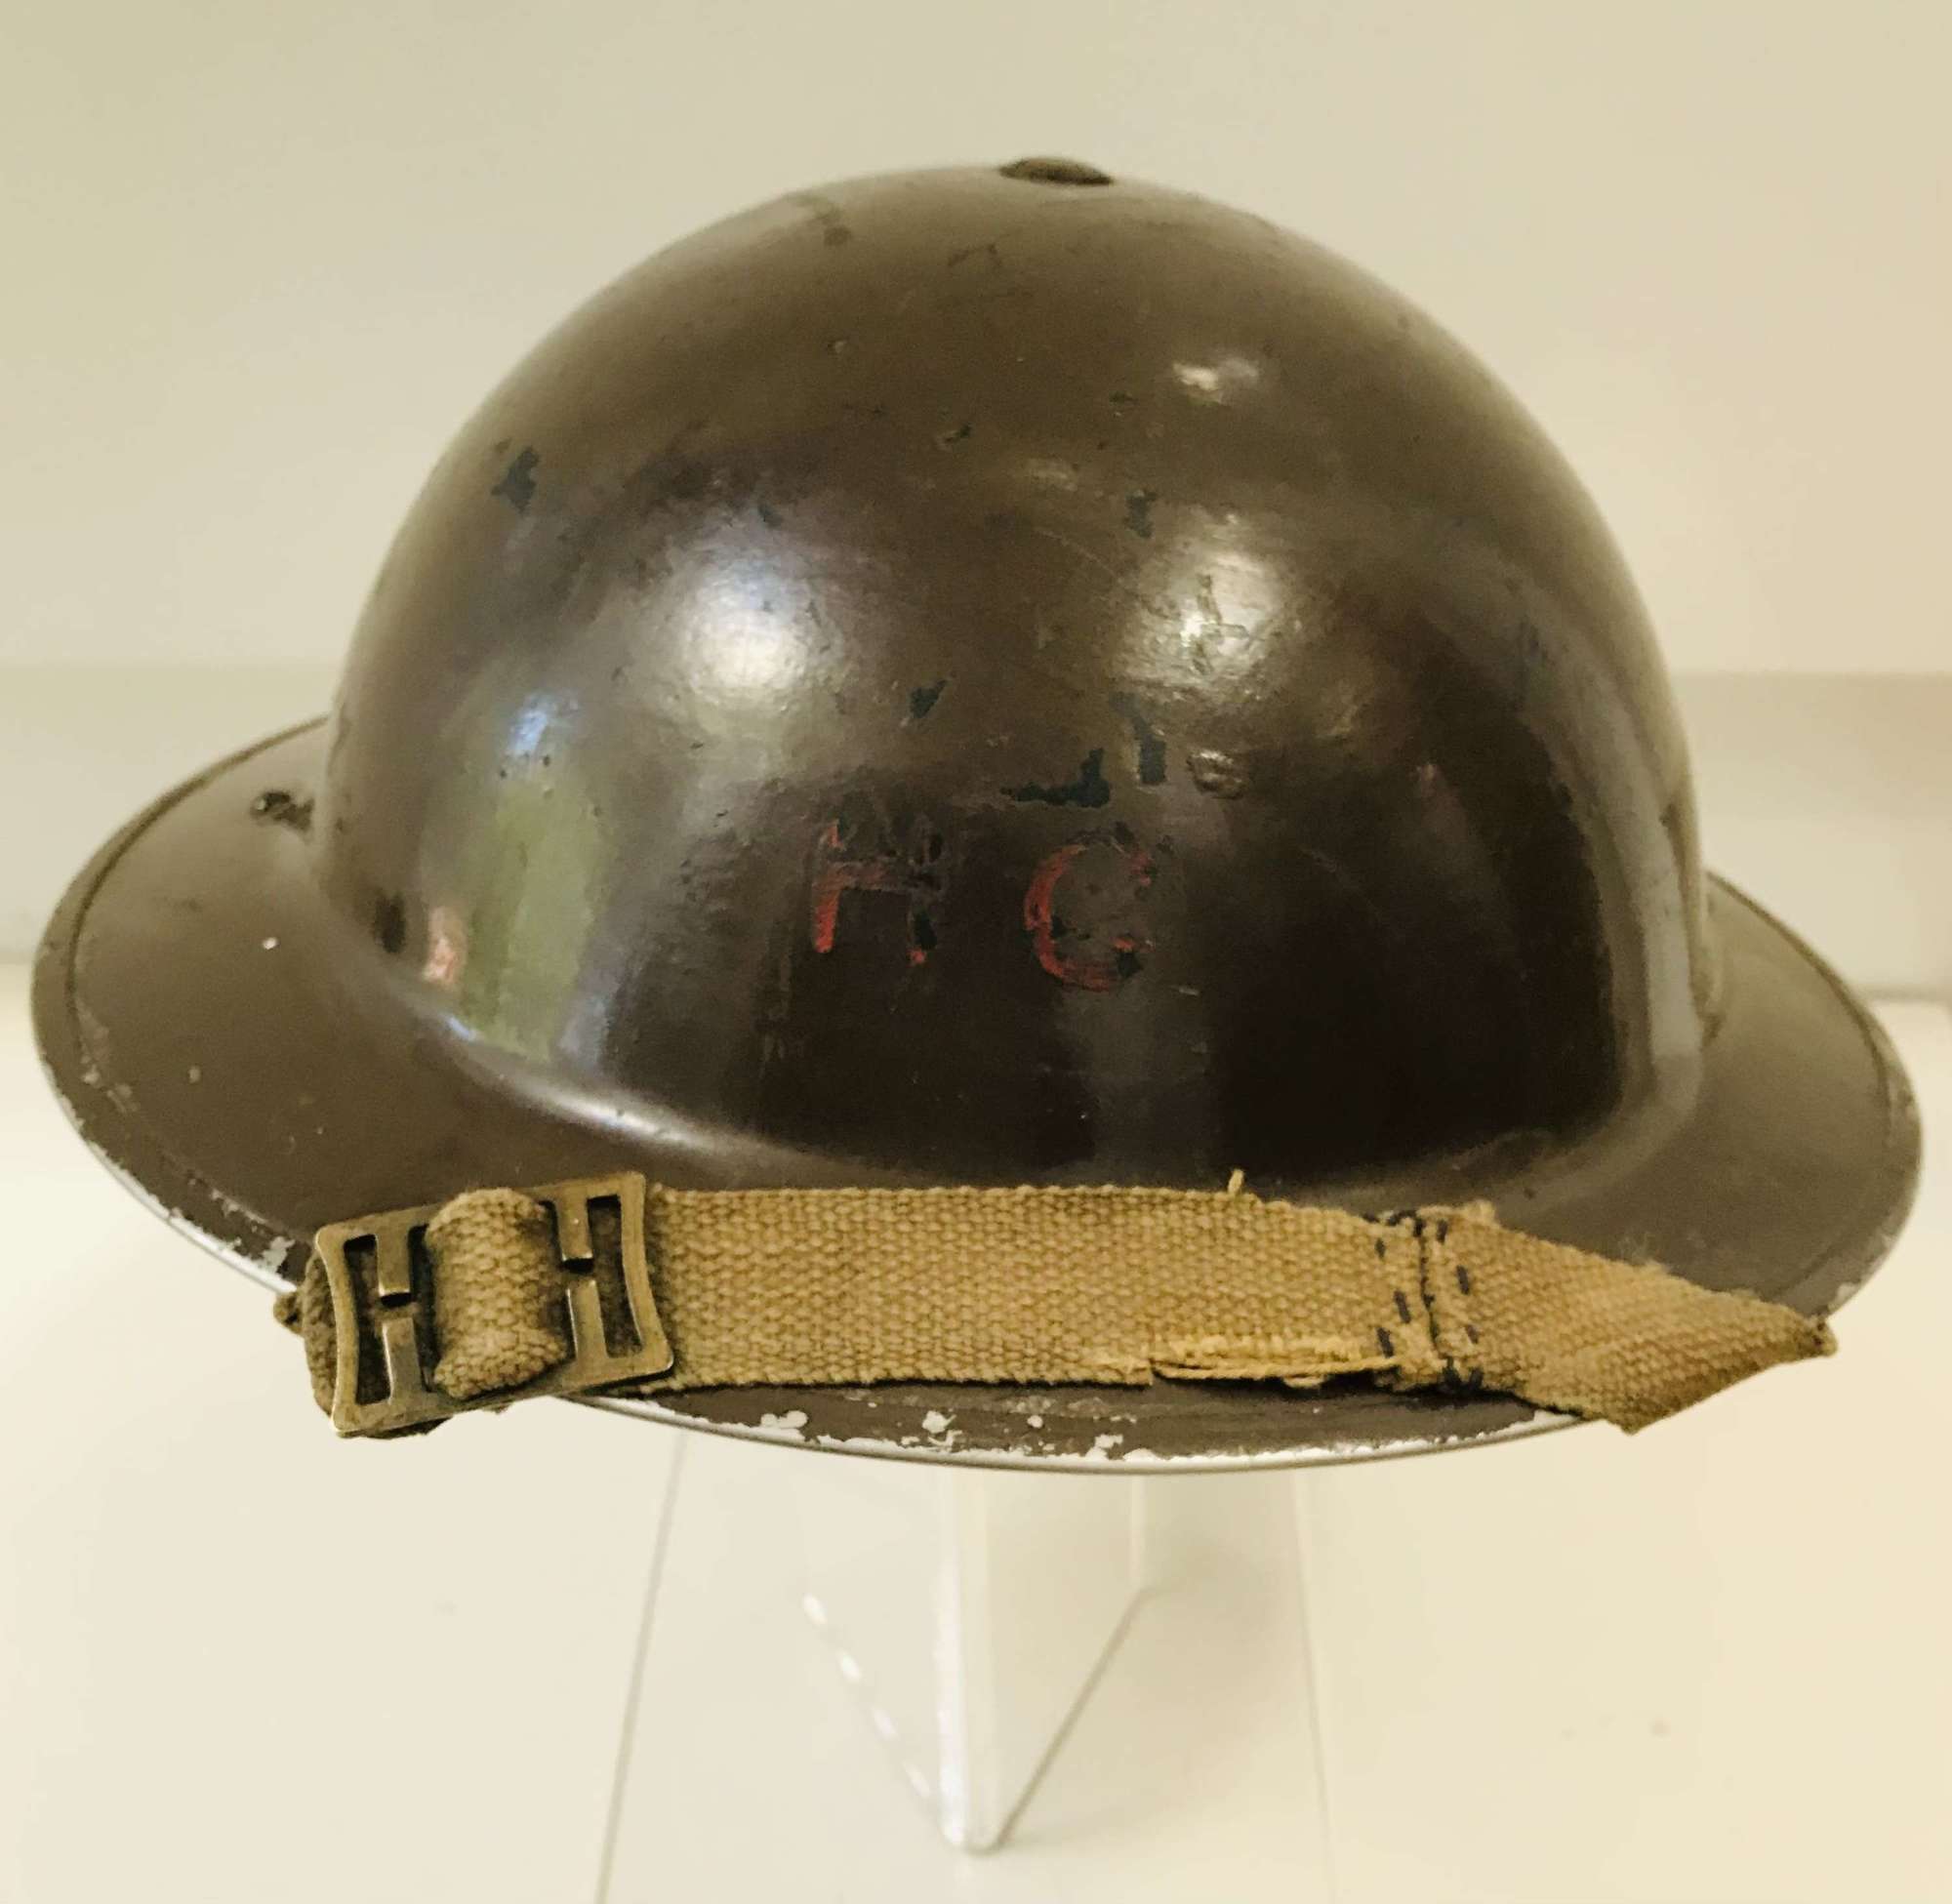 Home guard helmet